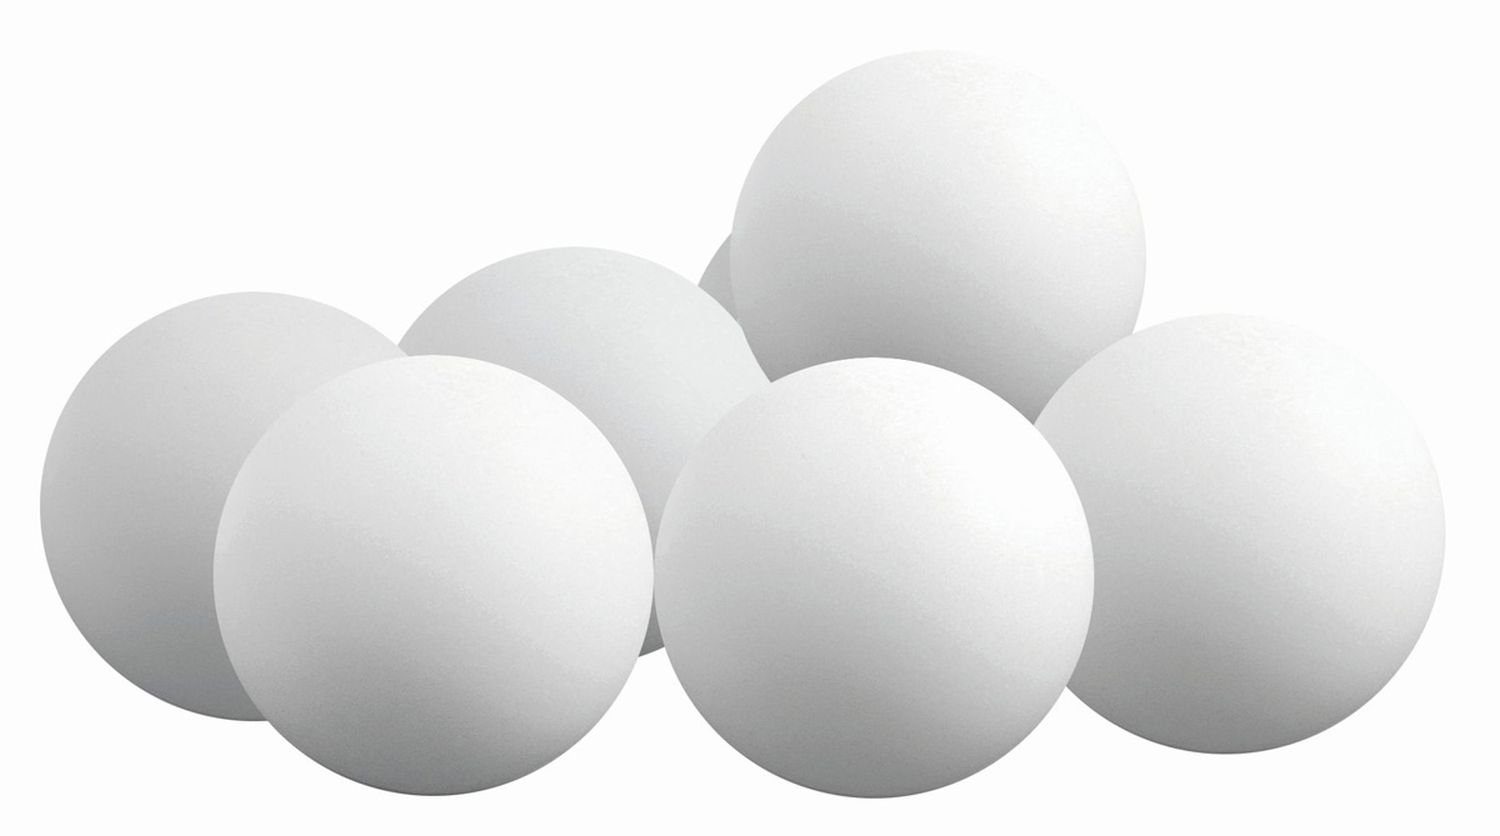 Sunflex Tischtennisball 1 Ball weiß, Ball Bälle Tischtennisball Balls Tischtennis